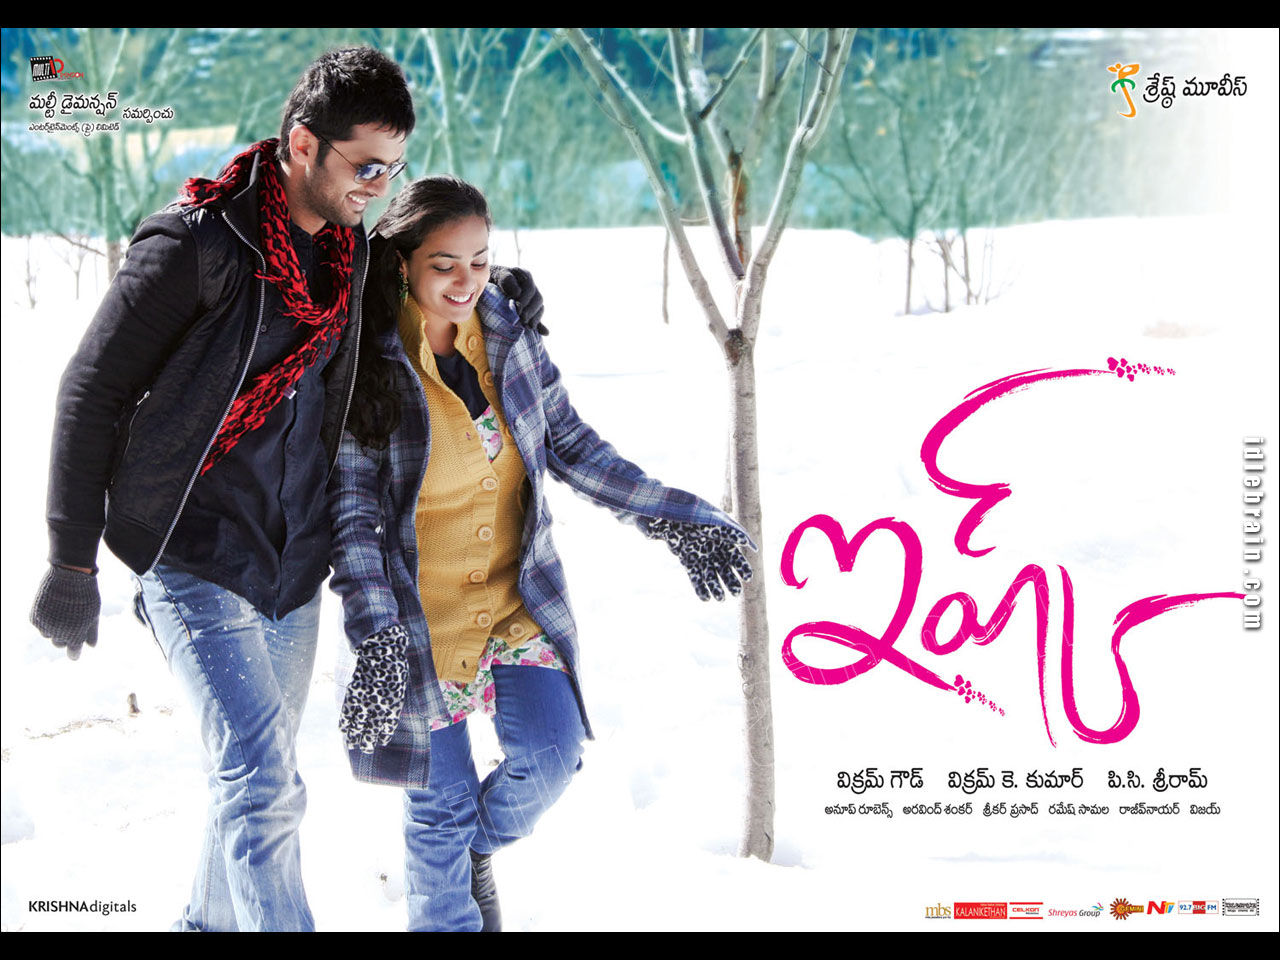 Ishq - - Ishq Telugu Movie , HD Wallpaper & Backgrounds